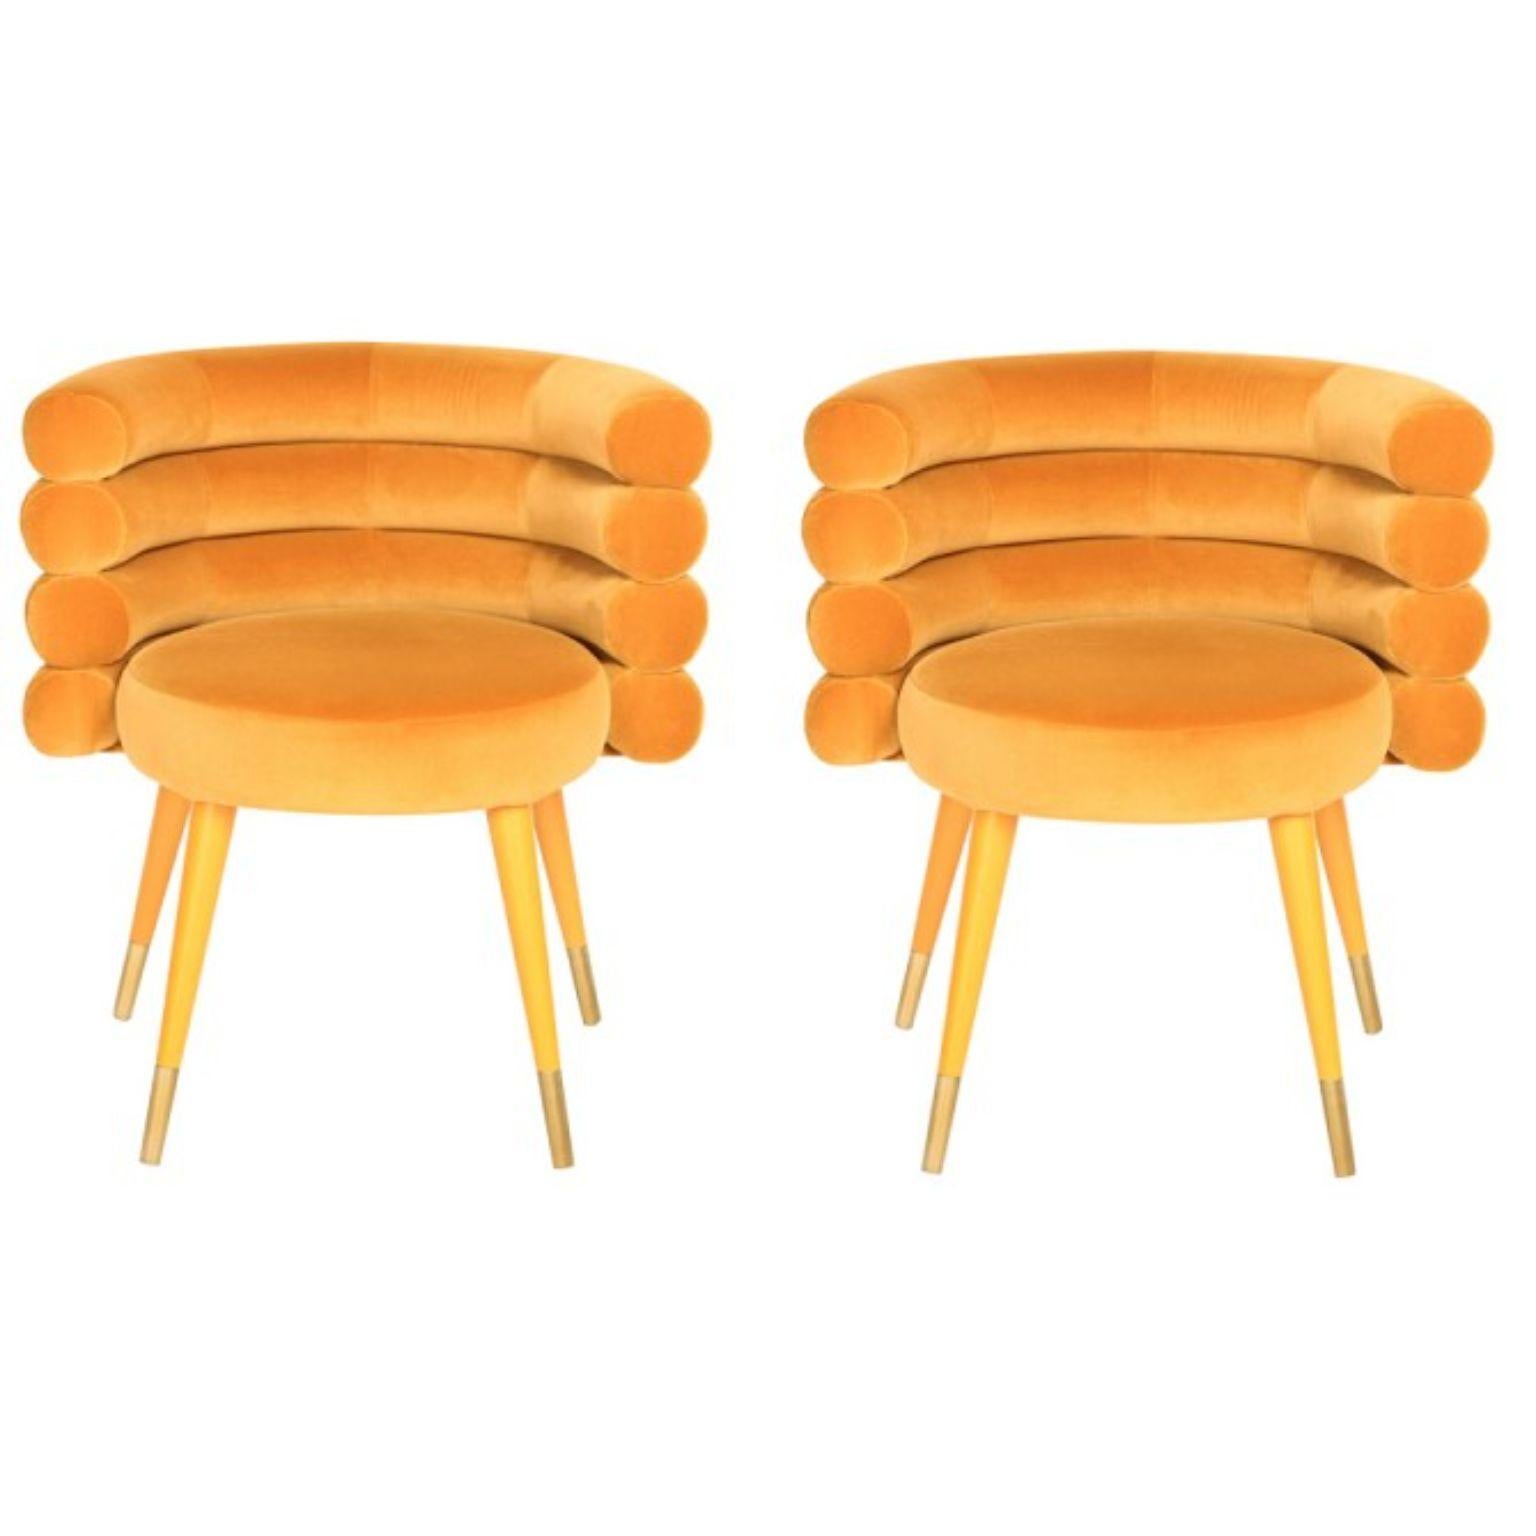 Ensemble de 2 chaises de salle à manger en guimauve moutarde, Royal Stranger.
Dimensions : 78 x 70 x 60 cm : 78 x 70 x 60 cm
Matériaux : Revêtement en velours et laiton.
Disponible en : Vert menthe, rose pâle, vert royal et rouge royal.

Royal